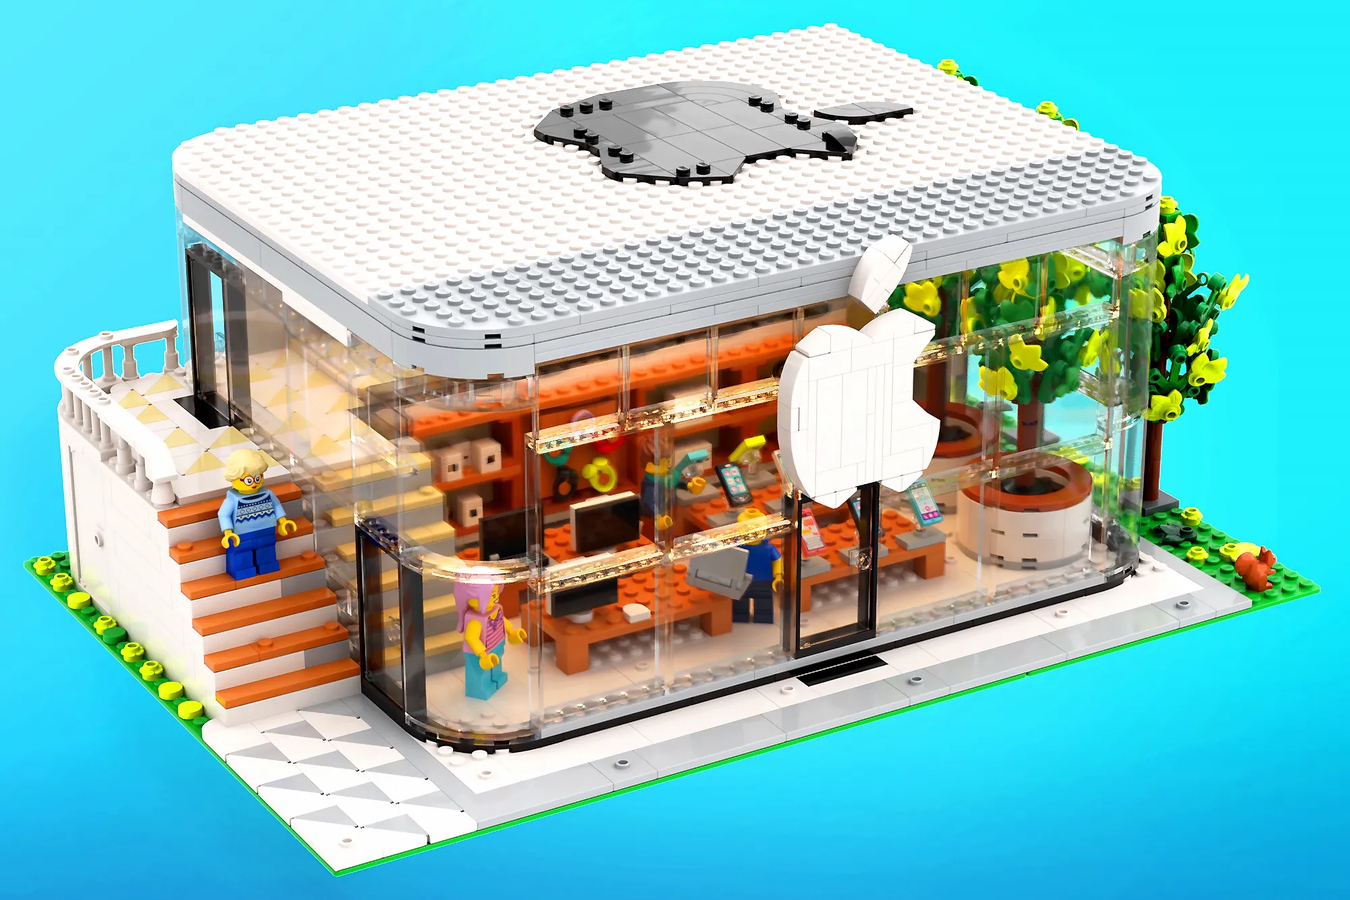 Фанат Apple створив макет конструктара Apple Store, LEGO може випустити його в роздрібний продаж